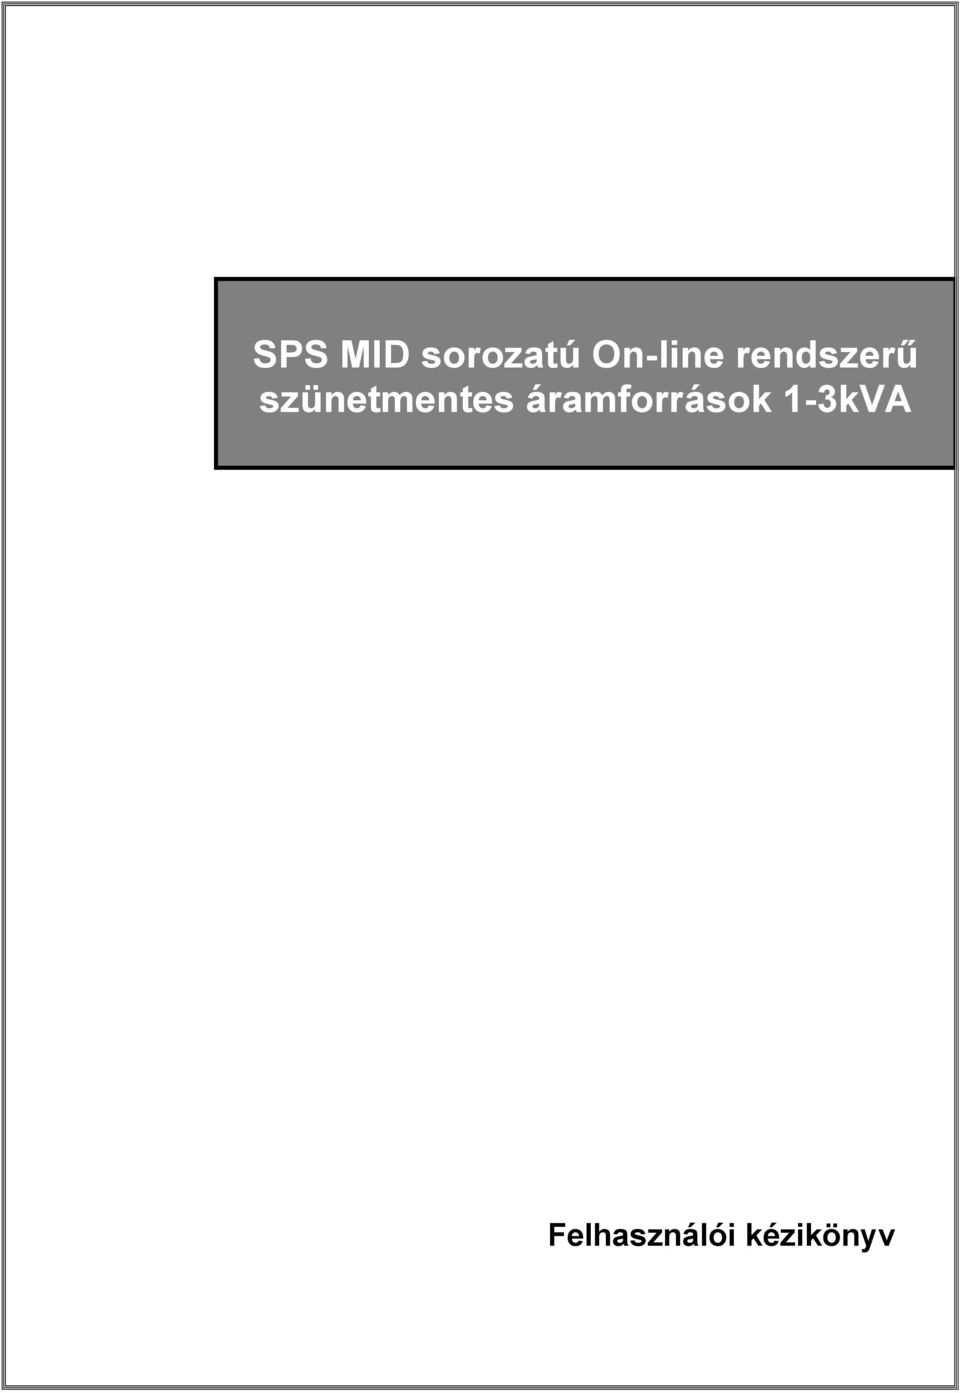 SPS MID sorozatú On-line rendszerű szünetmentes áramforrások 1-3kVA - PDF  Ingyenes letöltés